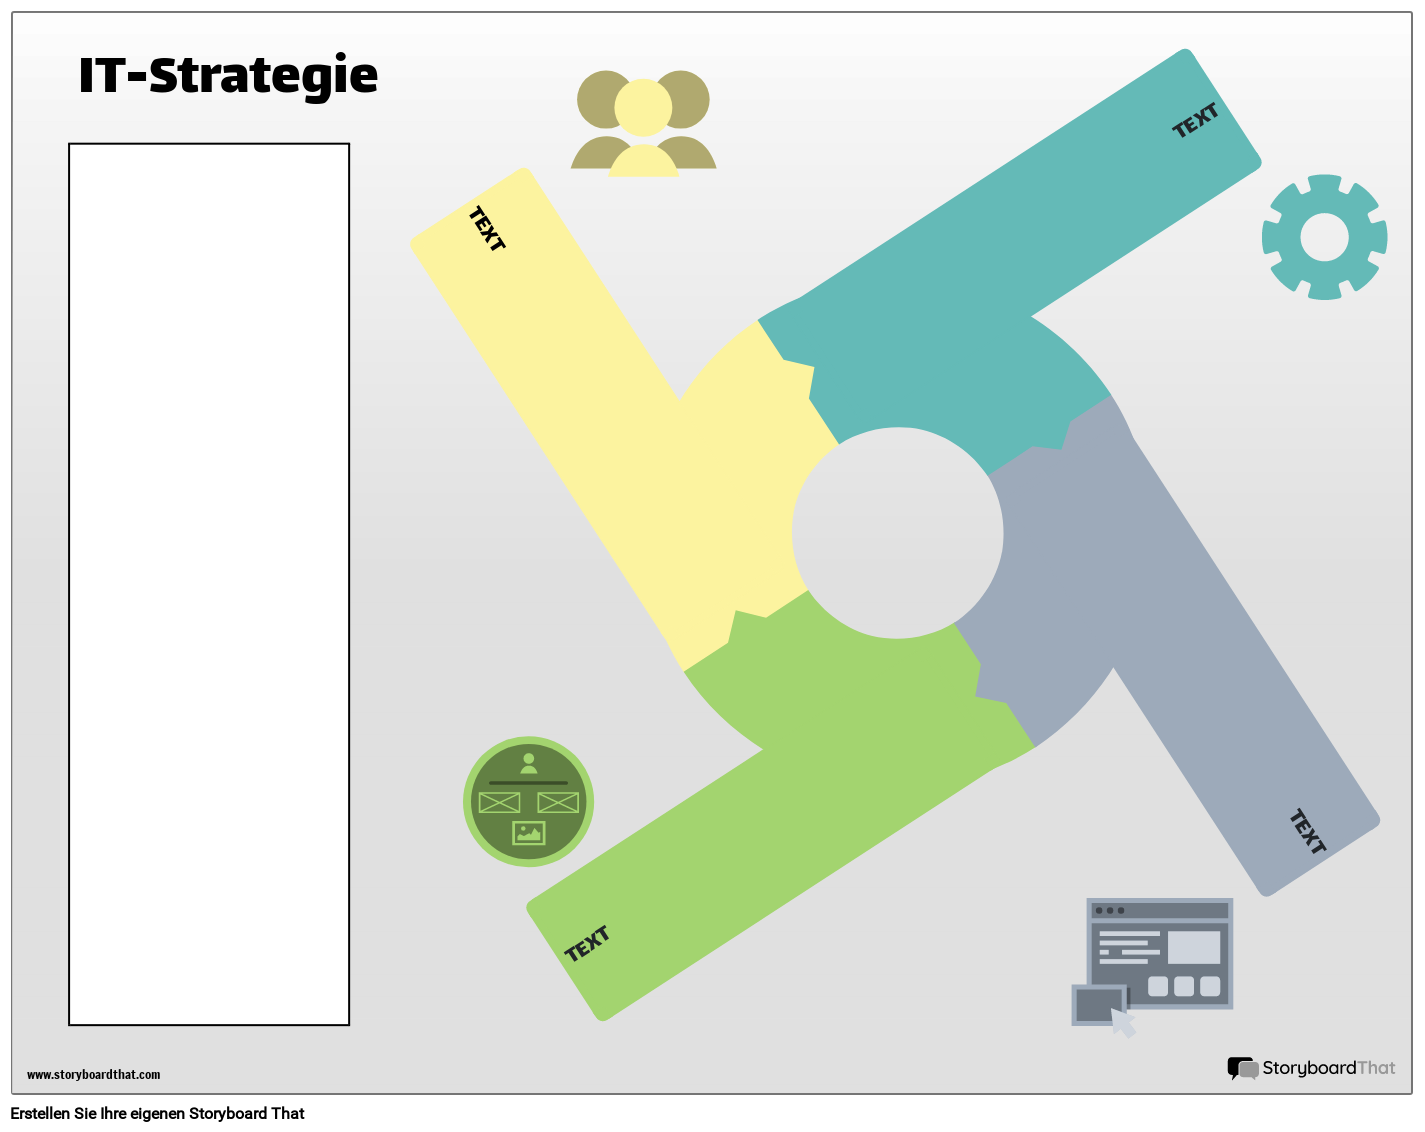 IT-Strategie 2